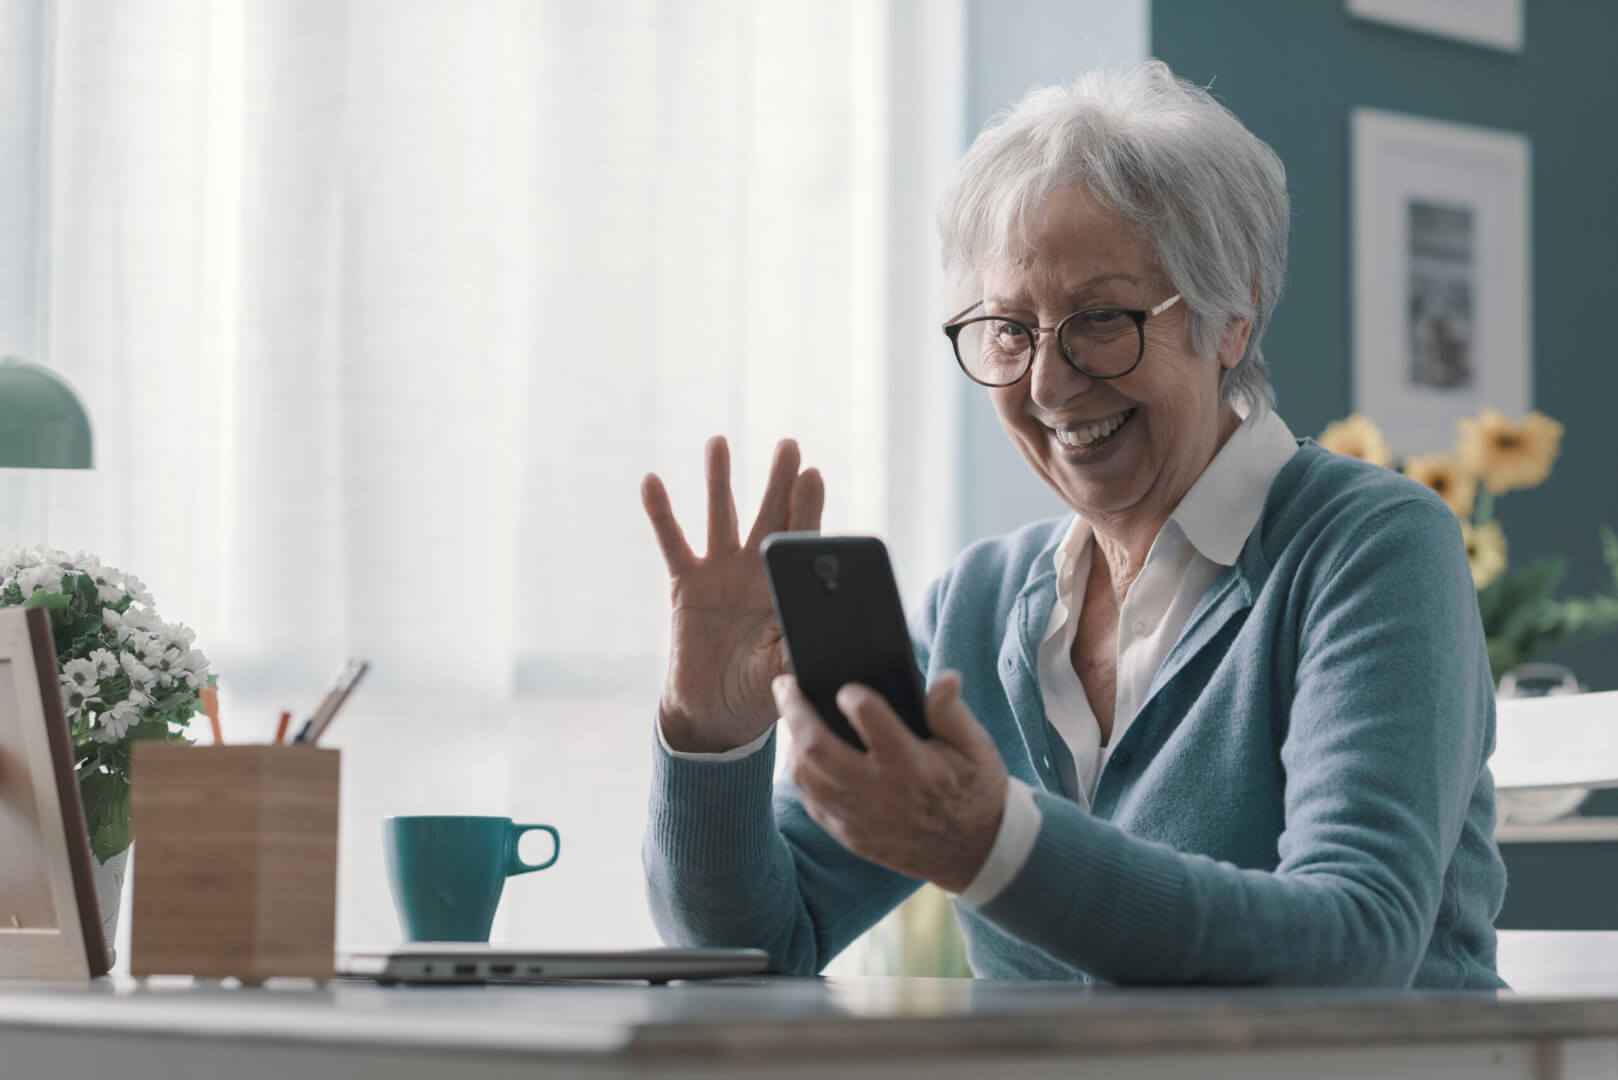 Una anciana usa su smartphone para interactuar con otros usuarios en una red social. Está saludando con su mano.